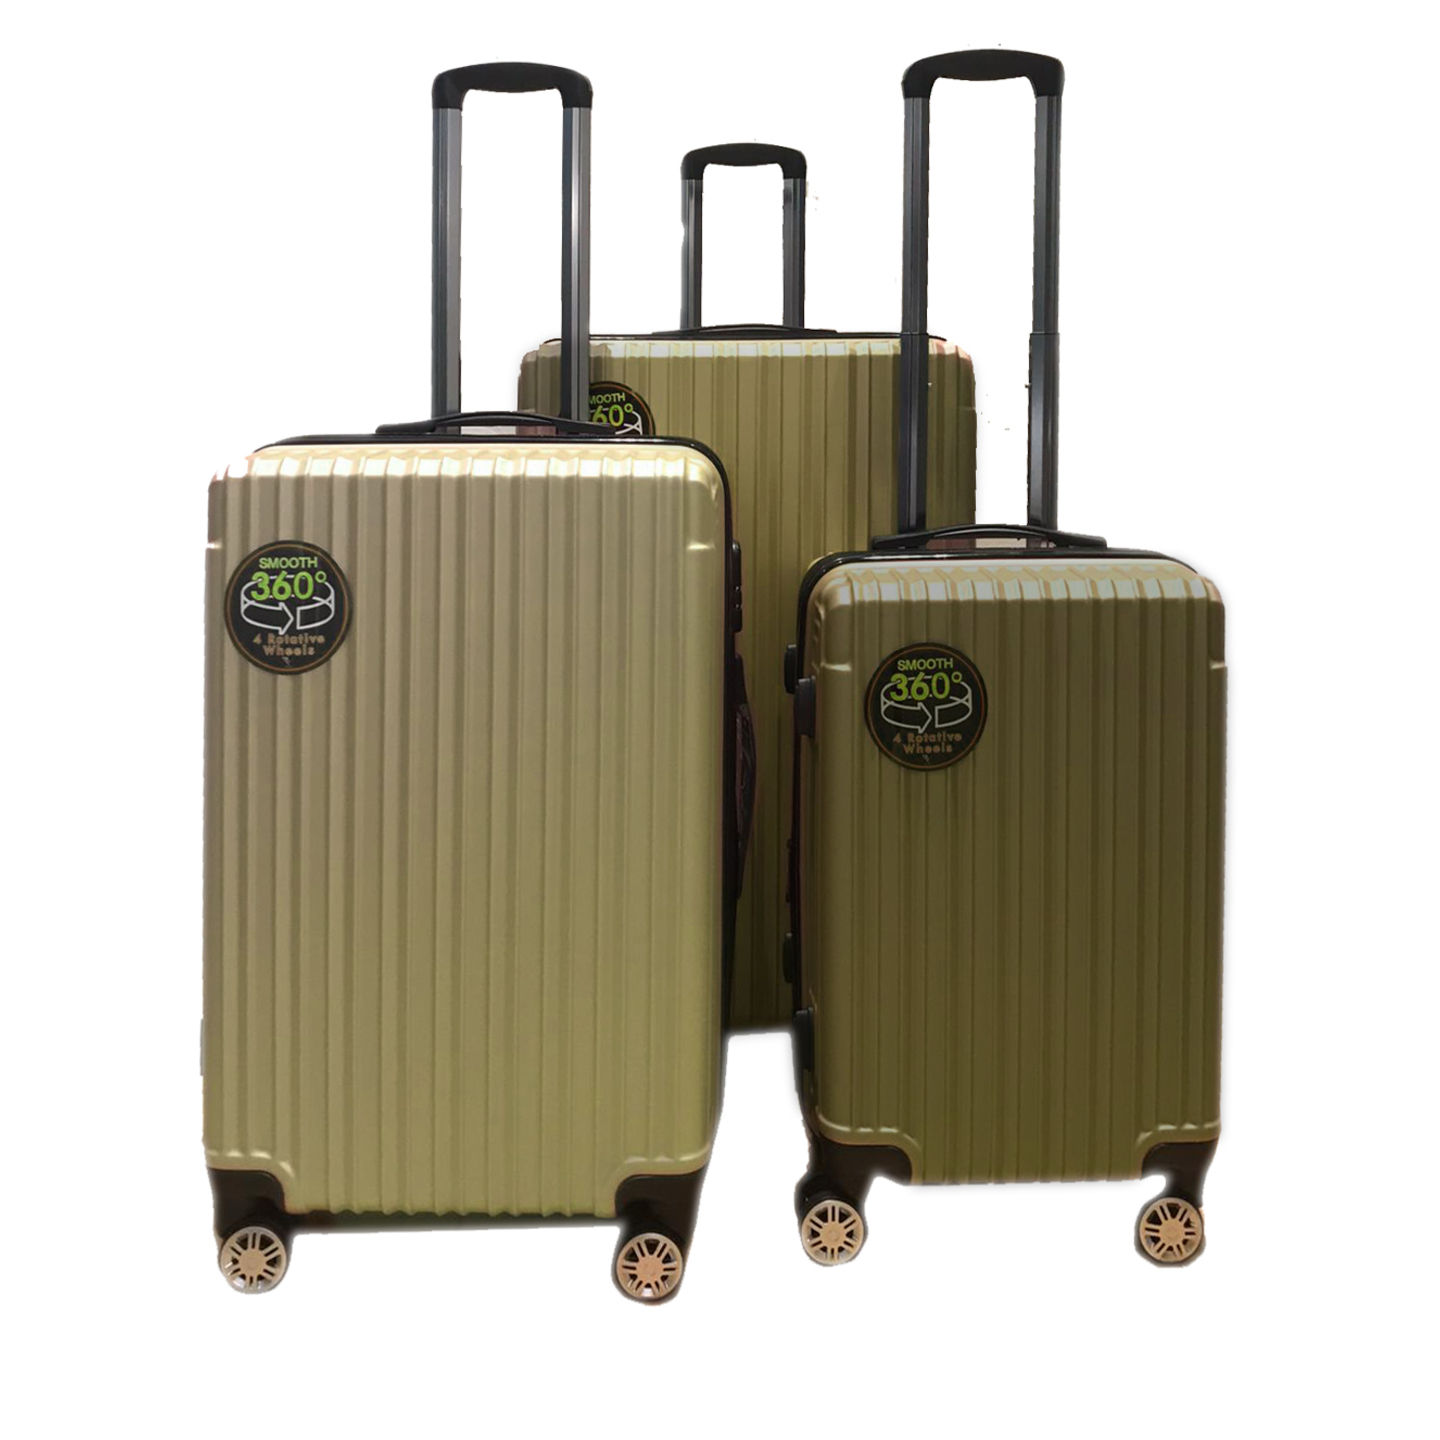 Rv-60 Elegant Hard Box Luggage- Gold 20 inch, 24 inch, 28 inch